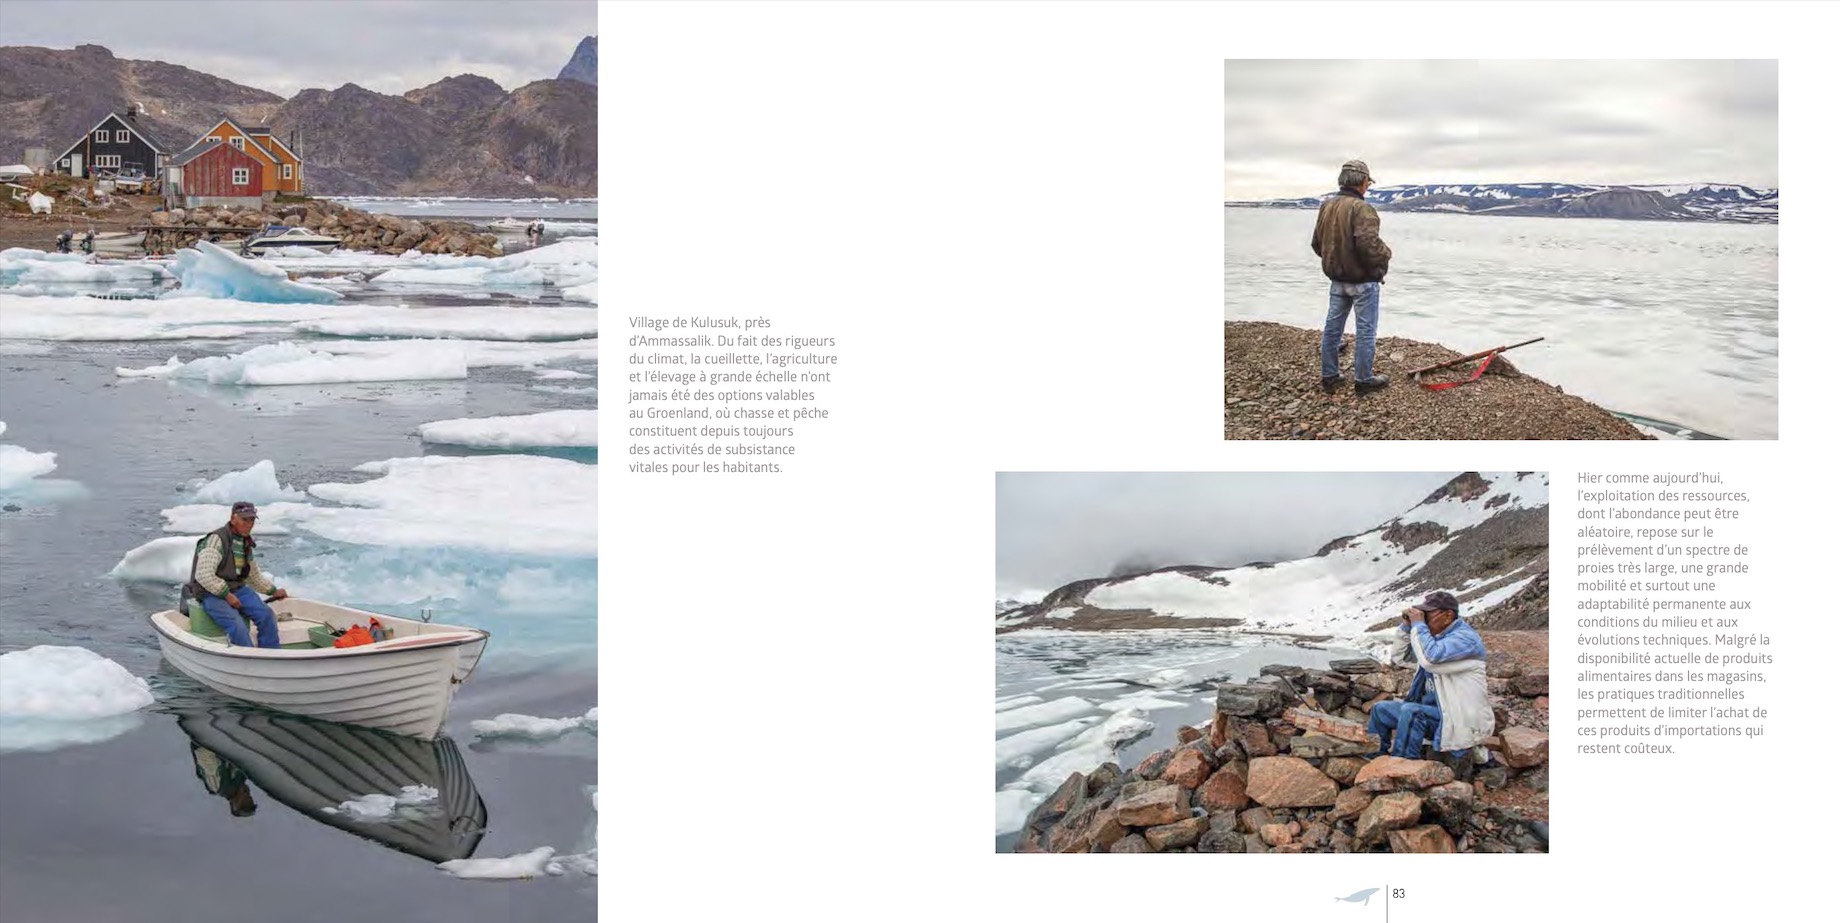 Extrait du livre "Groenland - L'île continent"